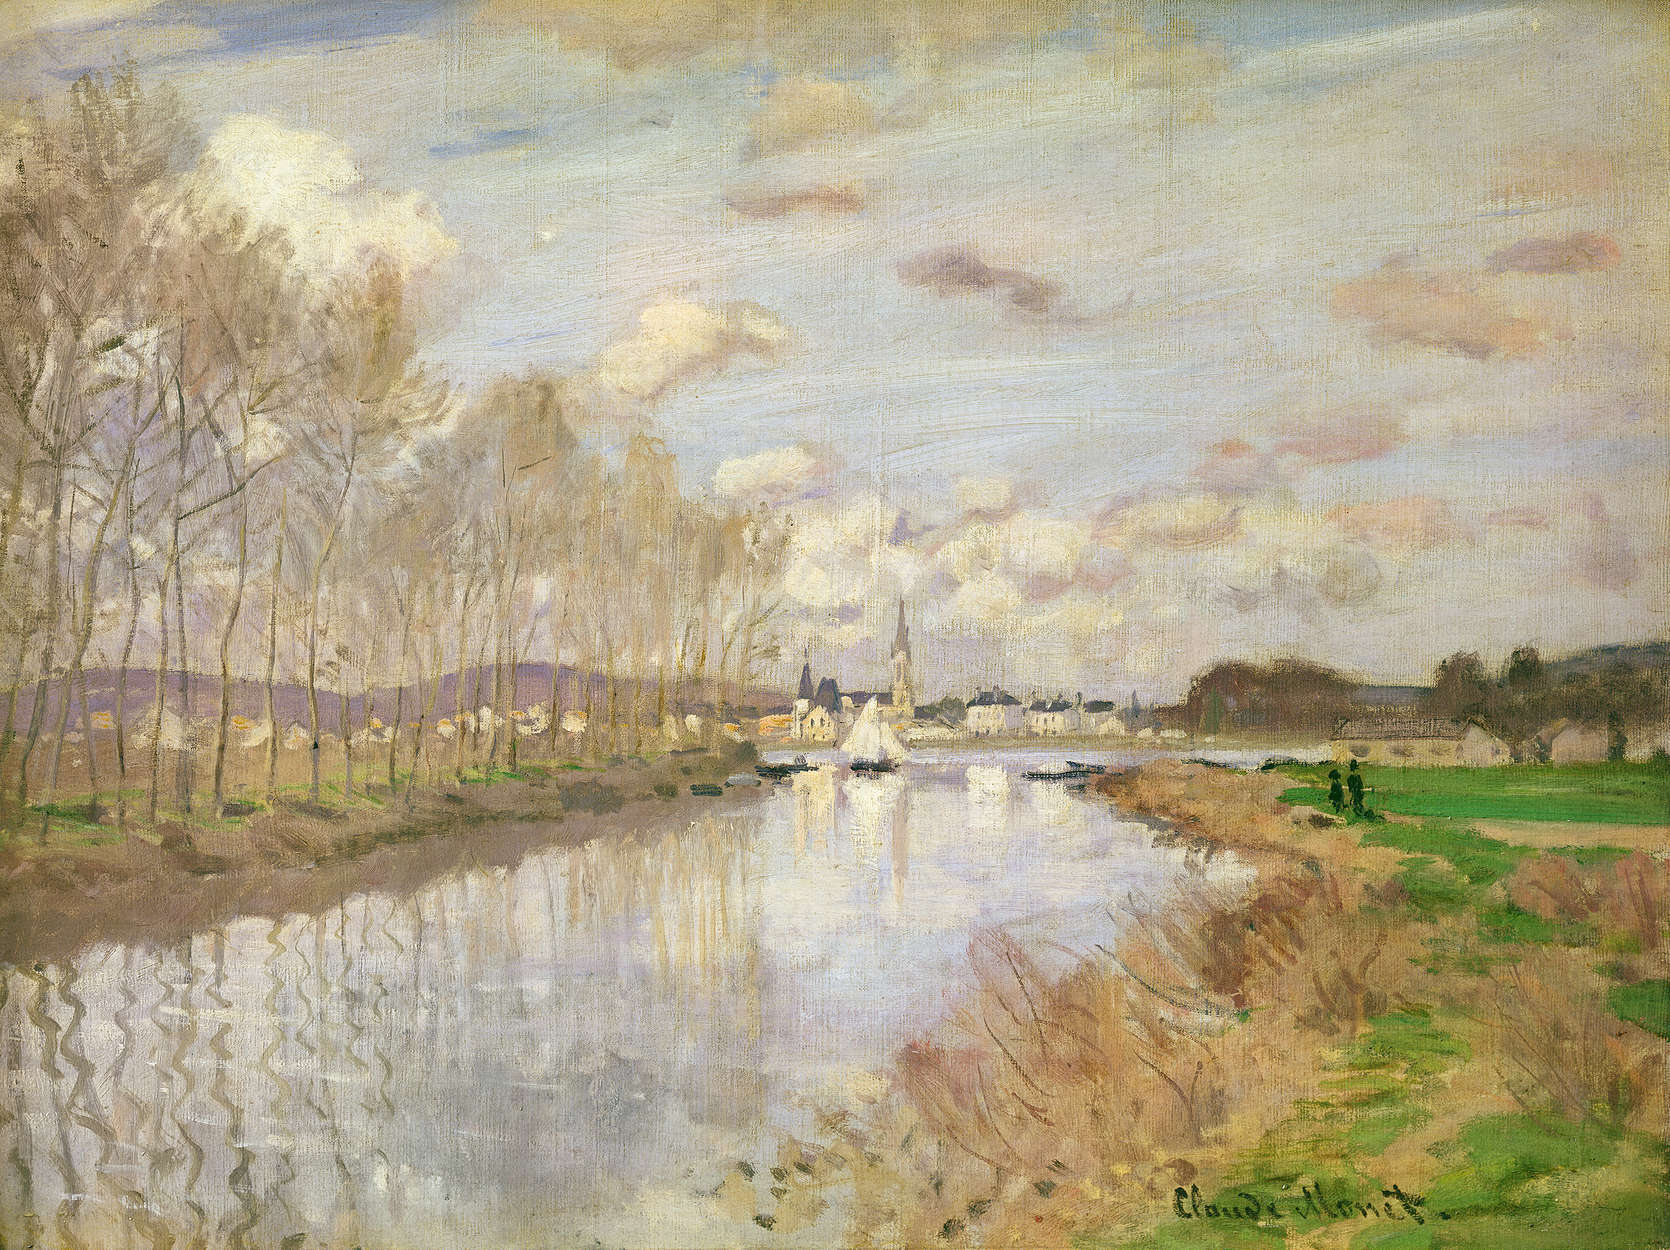             Papier peint panoramique "Le yacht près d'Argenteuil" de Claude Monet
        